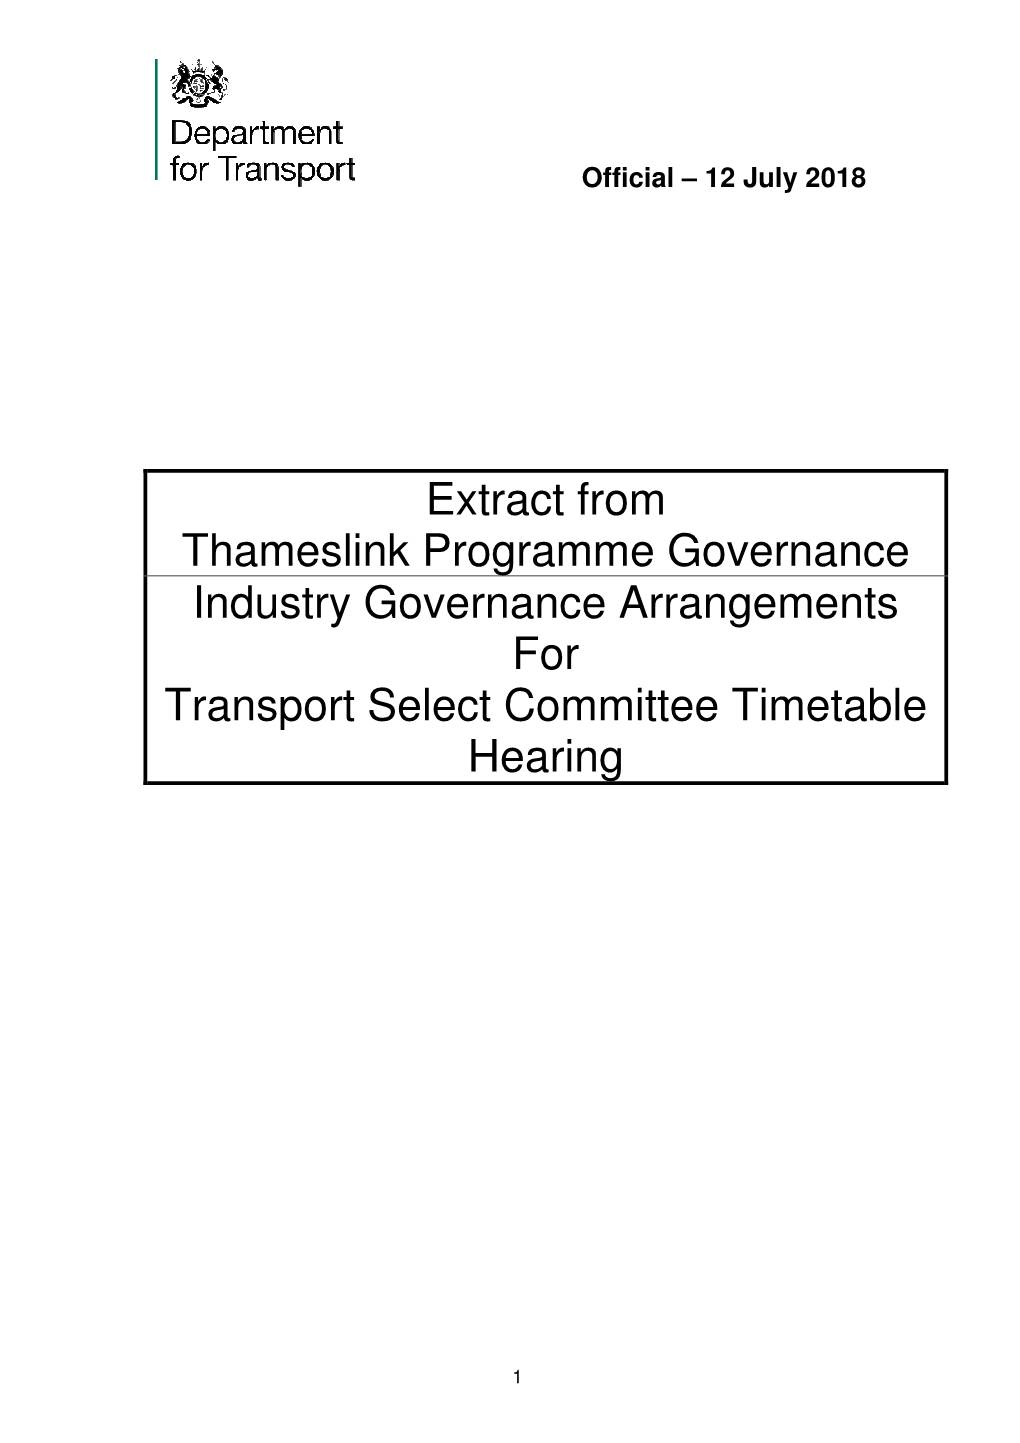 Department for Transport Thameslink Programme Governance Summary 12-7-2018